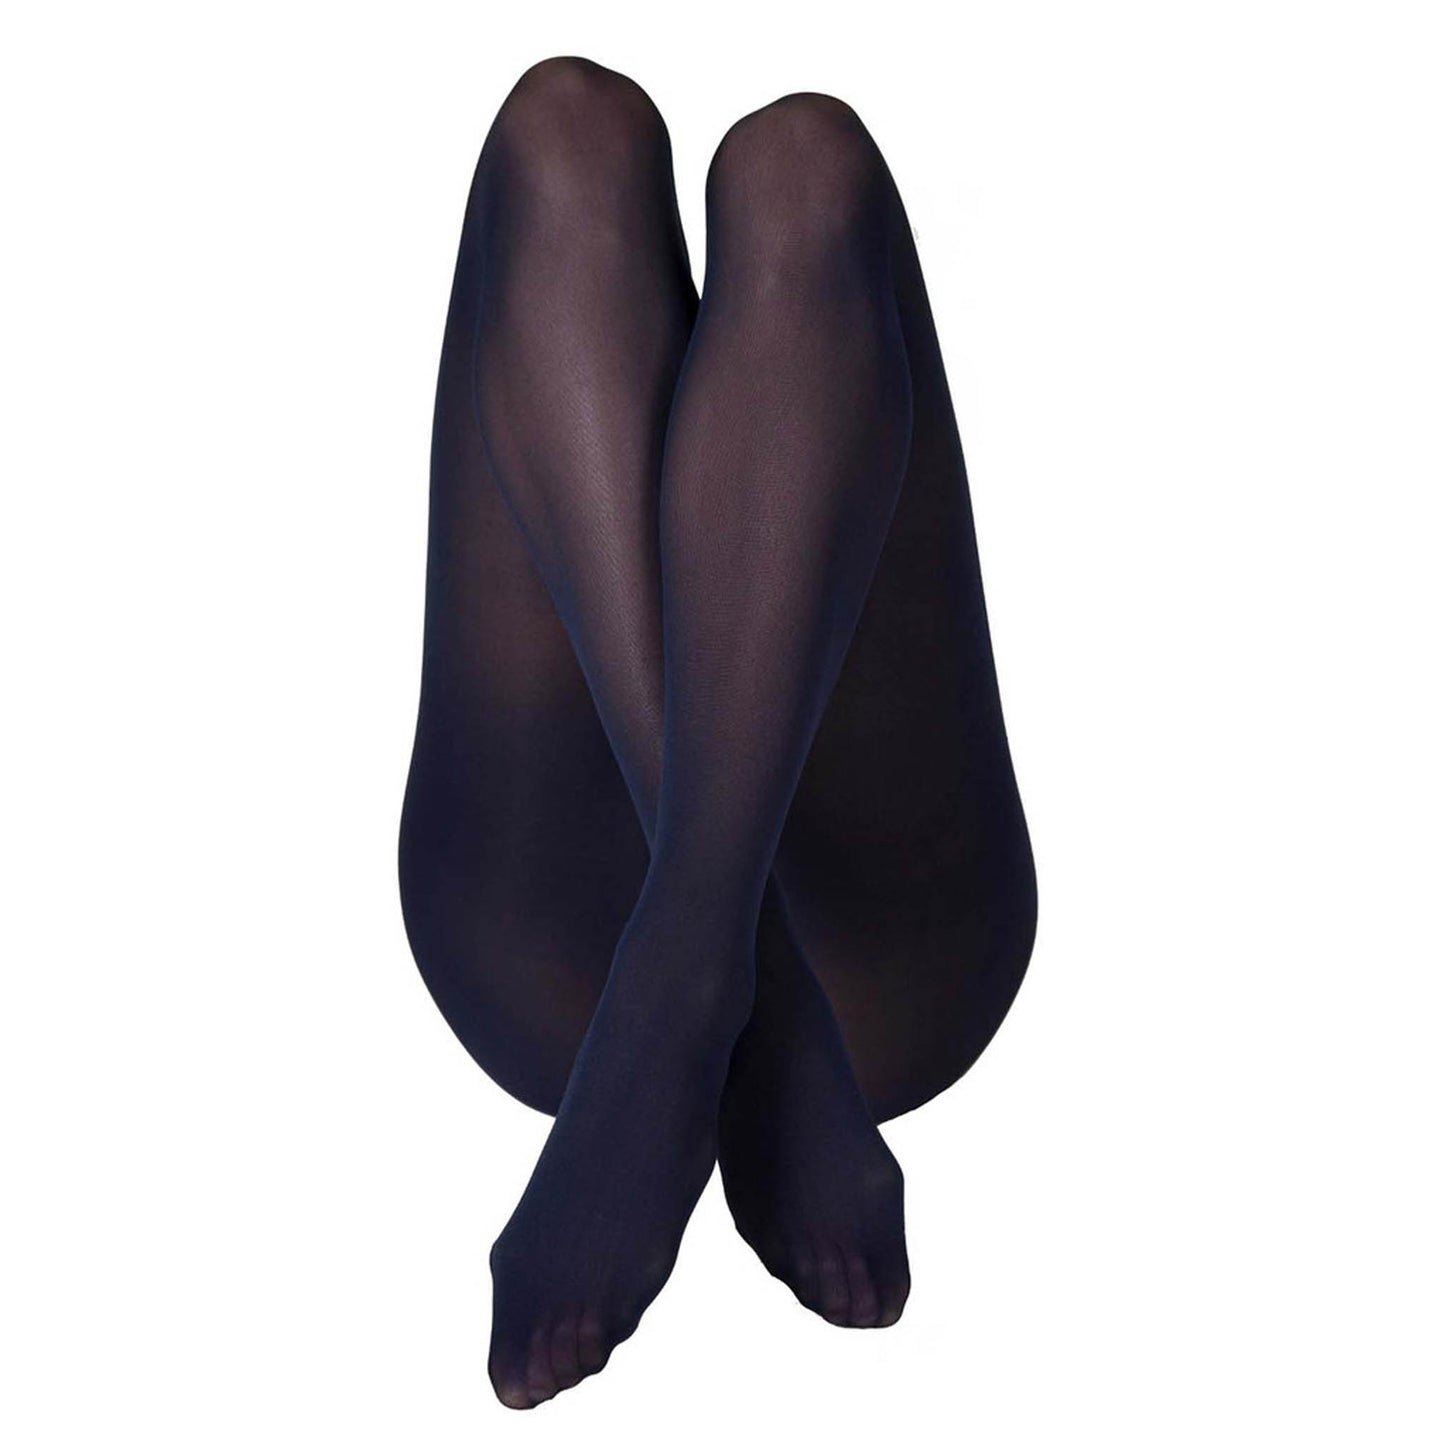 Olivia Premium 60 Denier Stockings